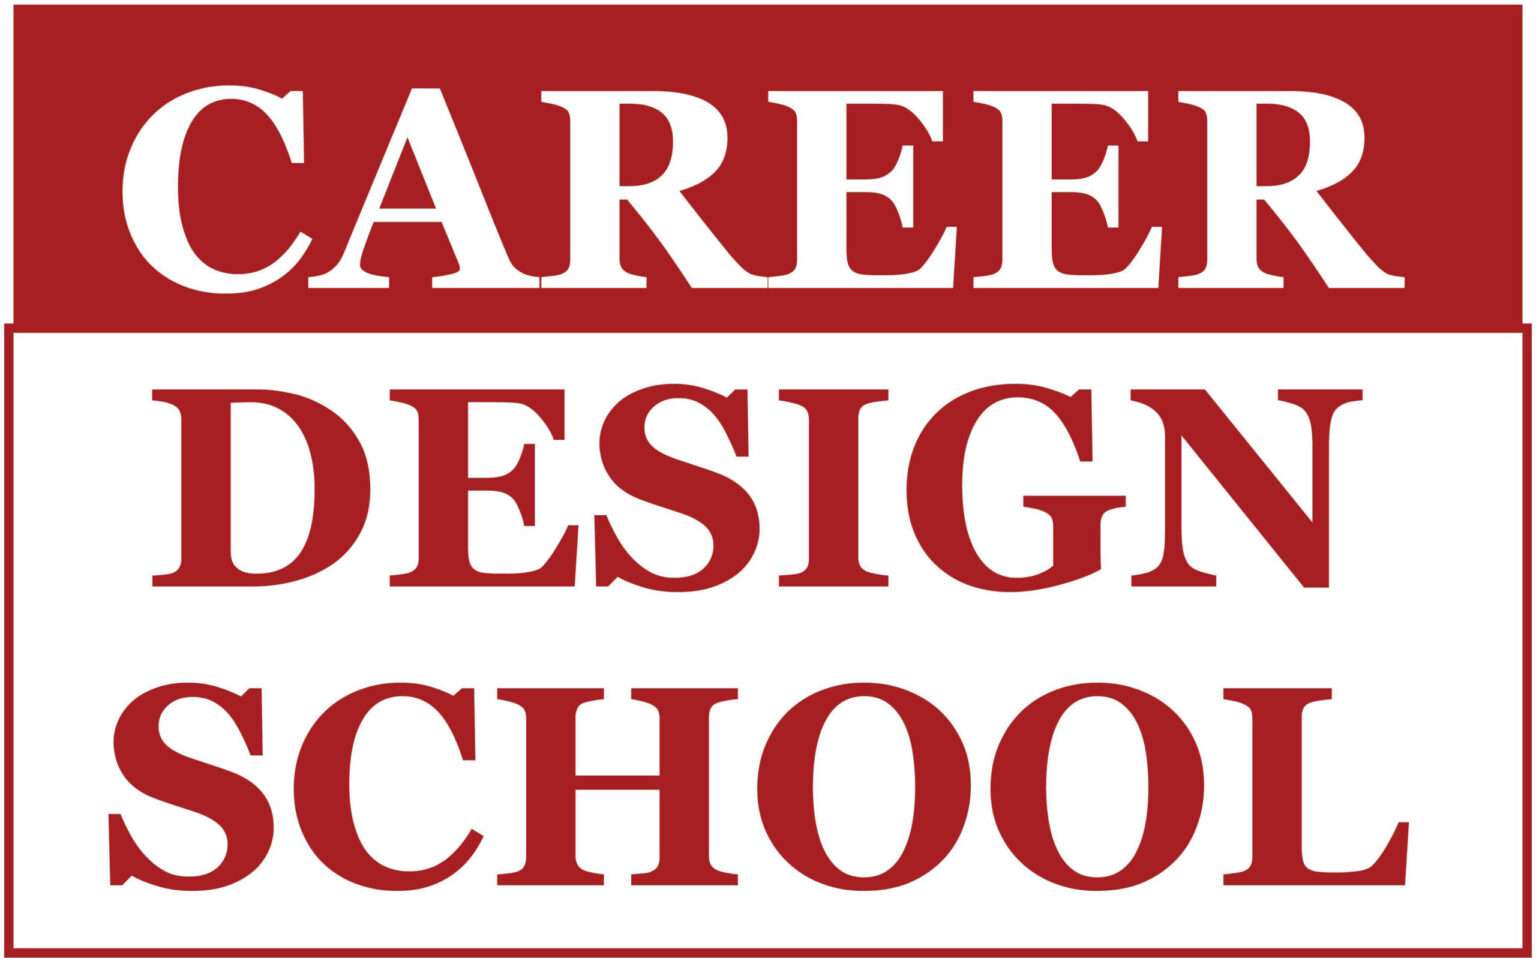 Career Design School